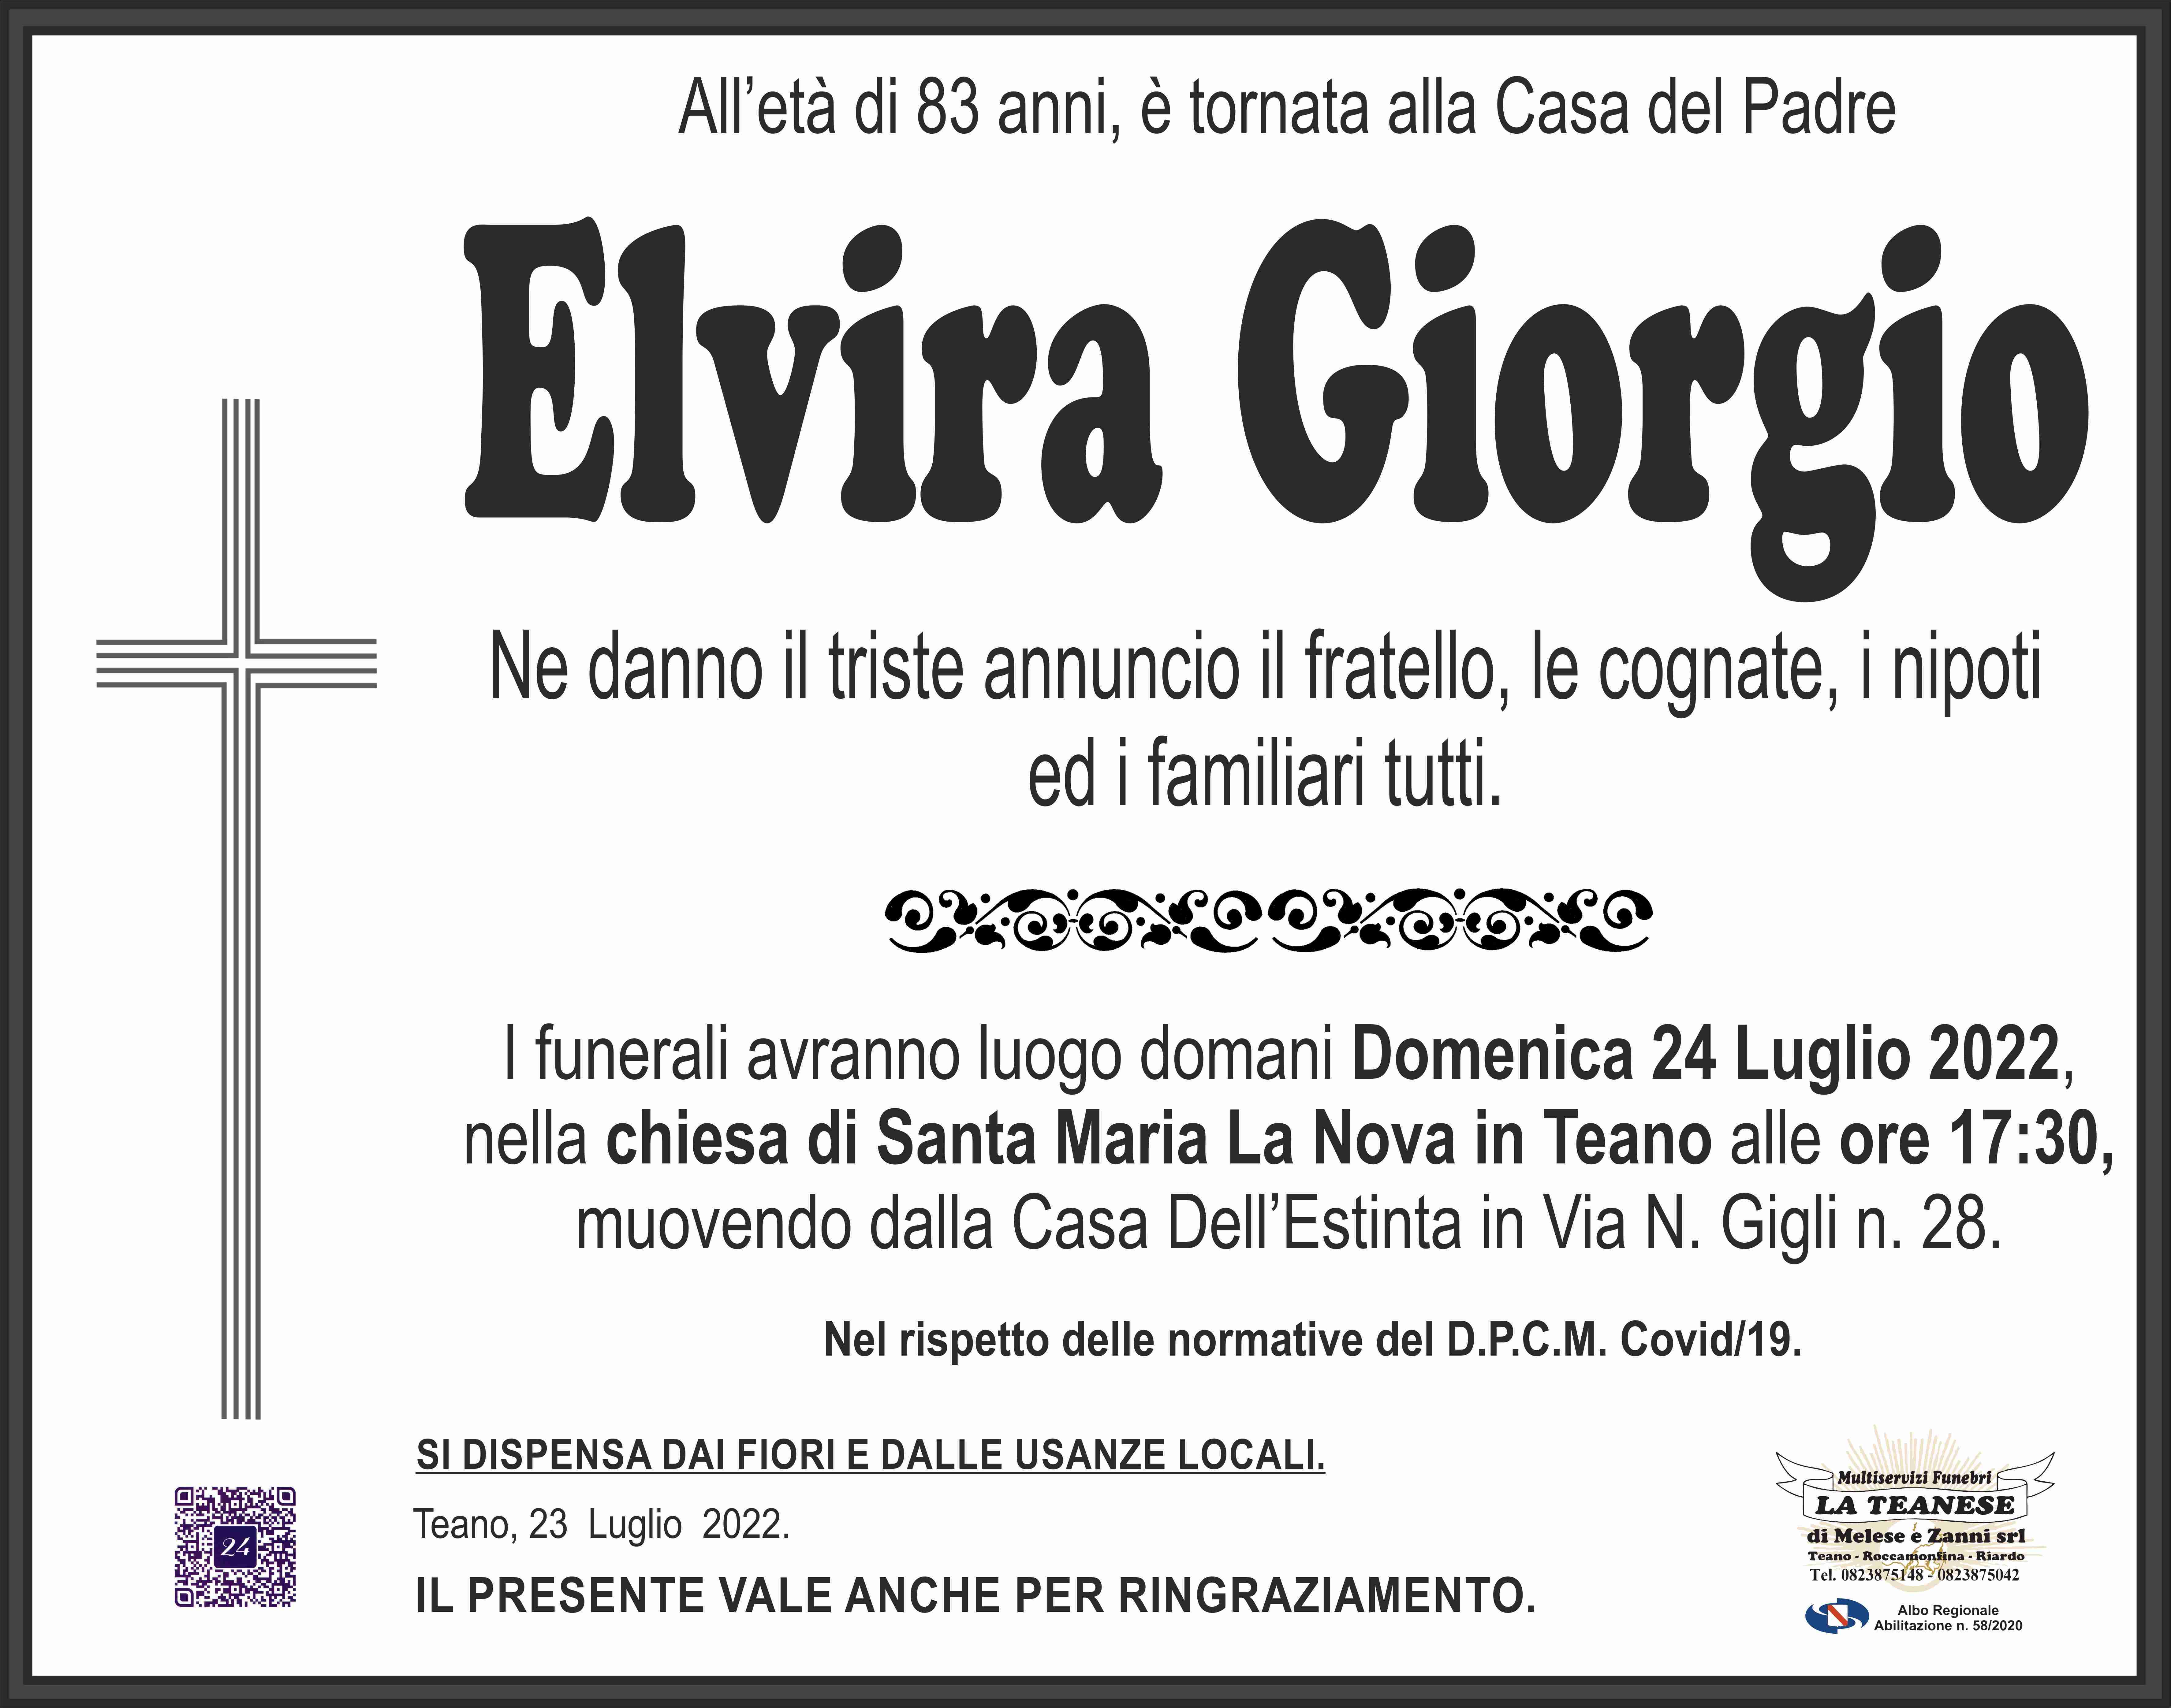 Elvira Giorgio